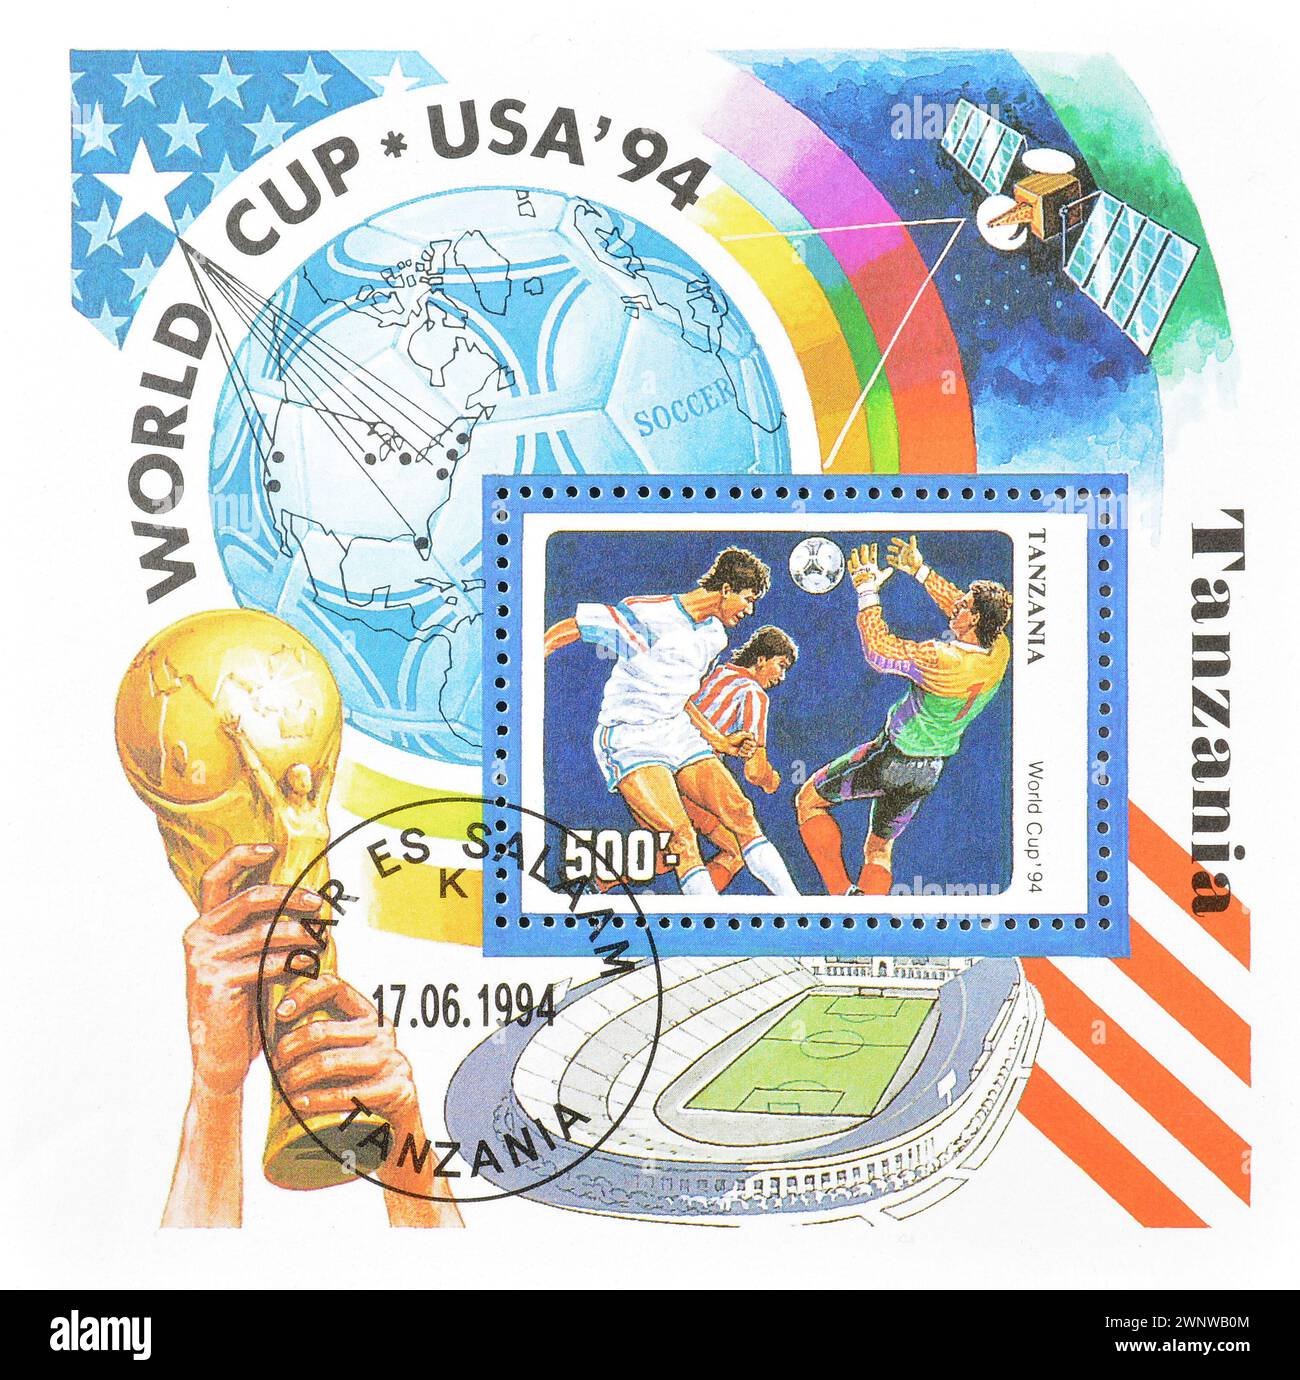 Foglio ricordo con francobollo cancellato stampato dalla Tanzania, che promuove la Coppa del mondo FIFA 1994 - USA, circa 1994. Foto Stock